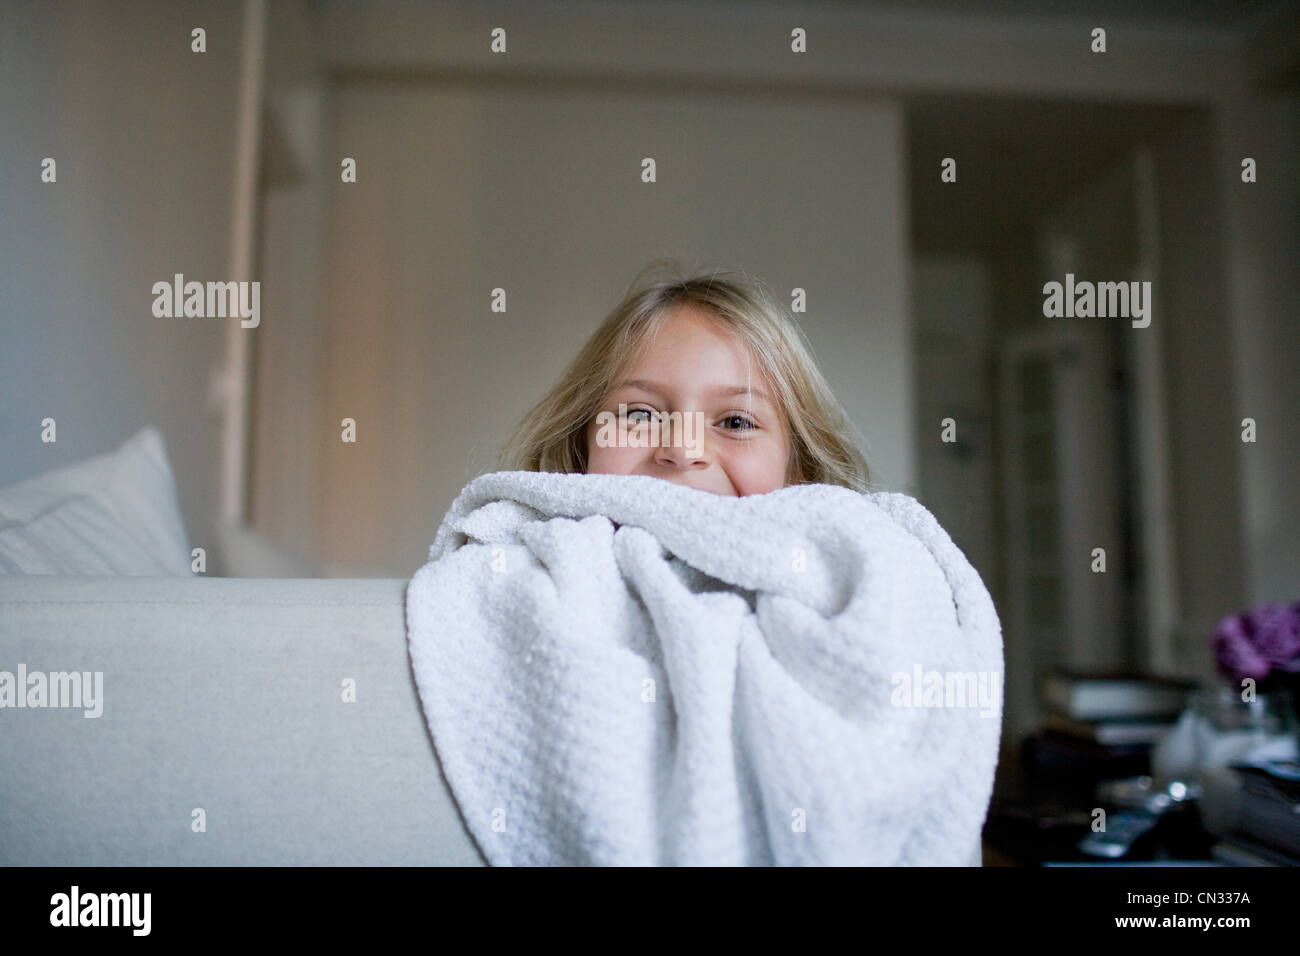 Girl peeking over blanket Stock Photo